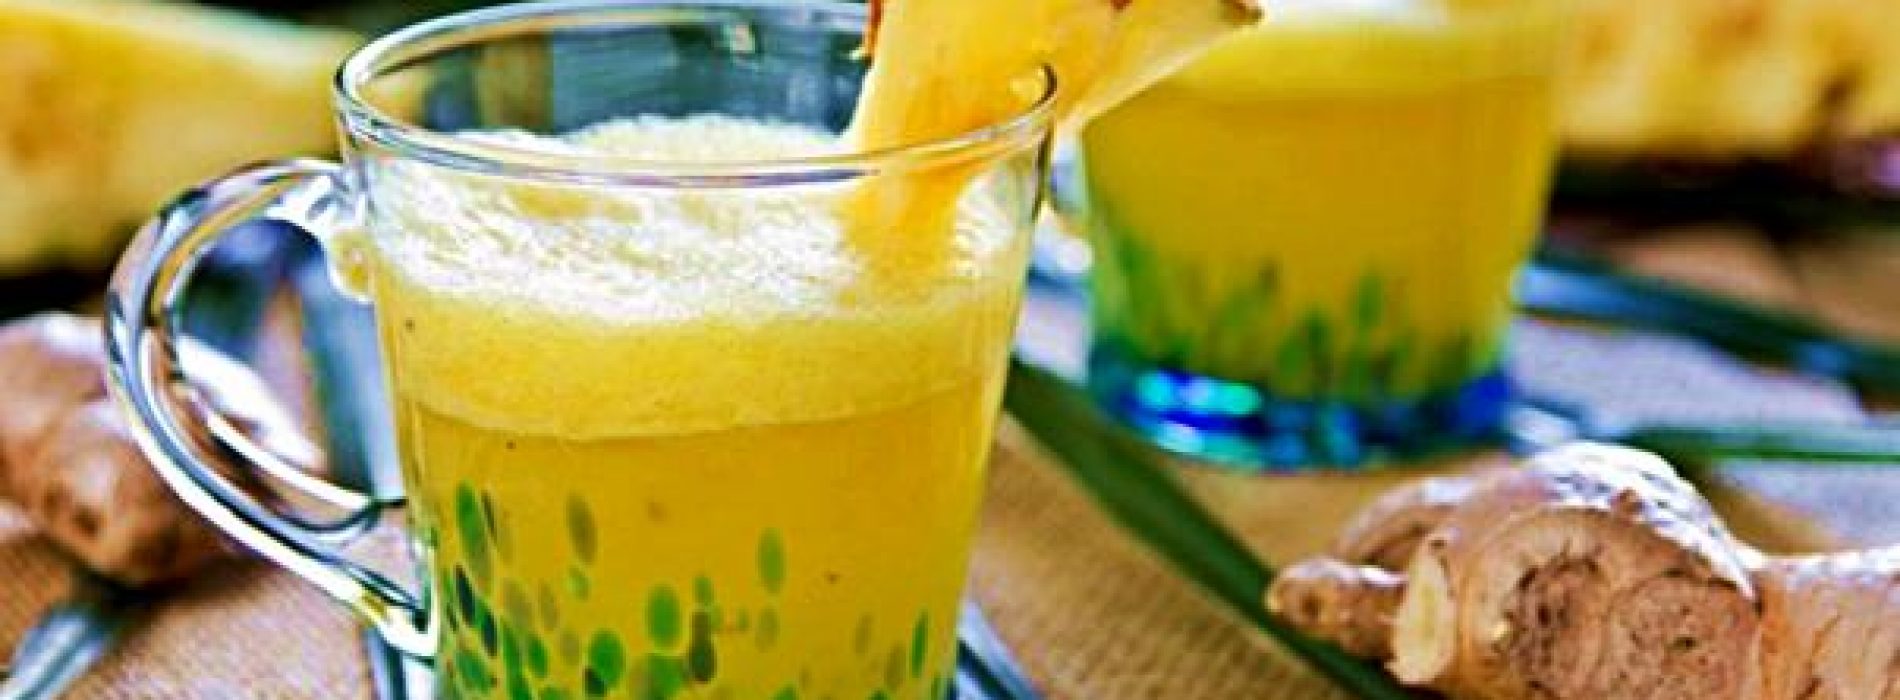 Hoe maak je ananas & gember smoothies om te helpen met pijn en ontsteking